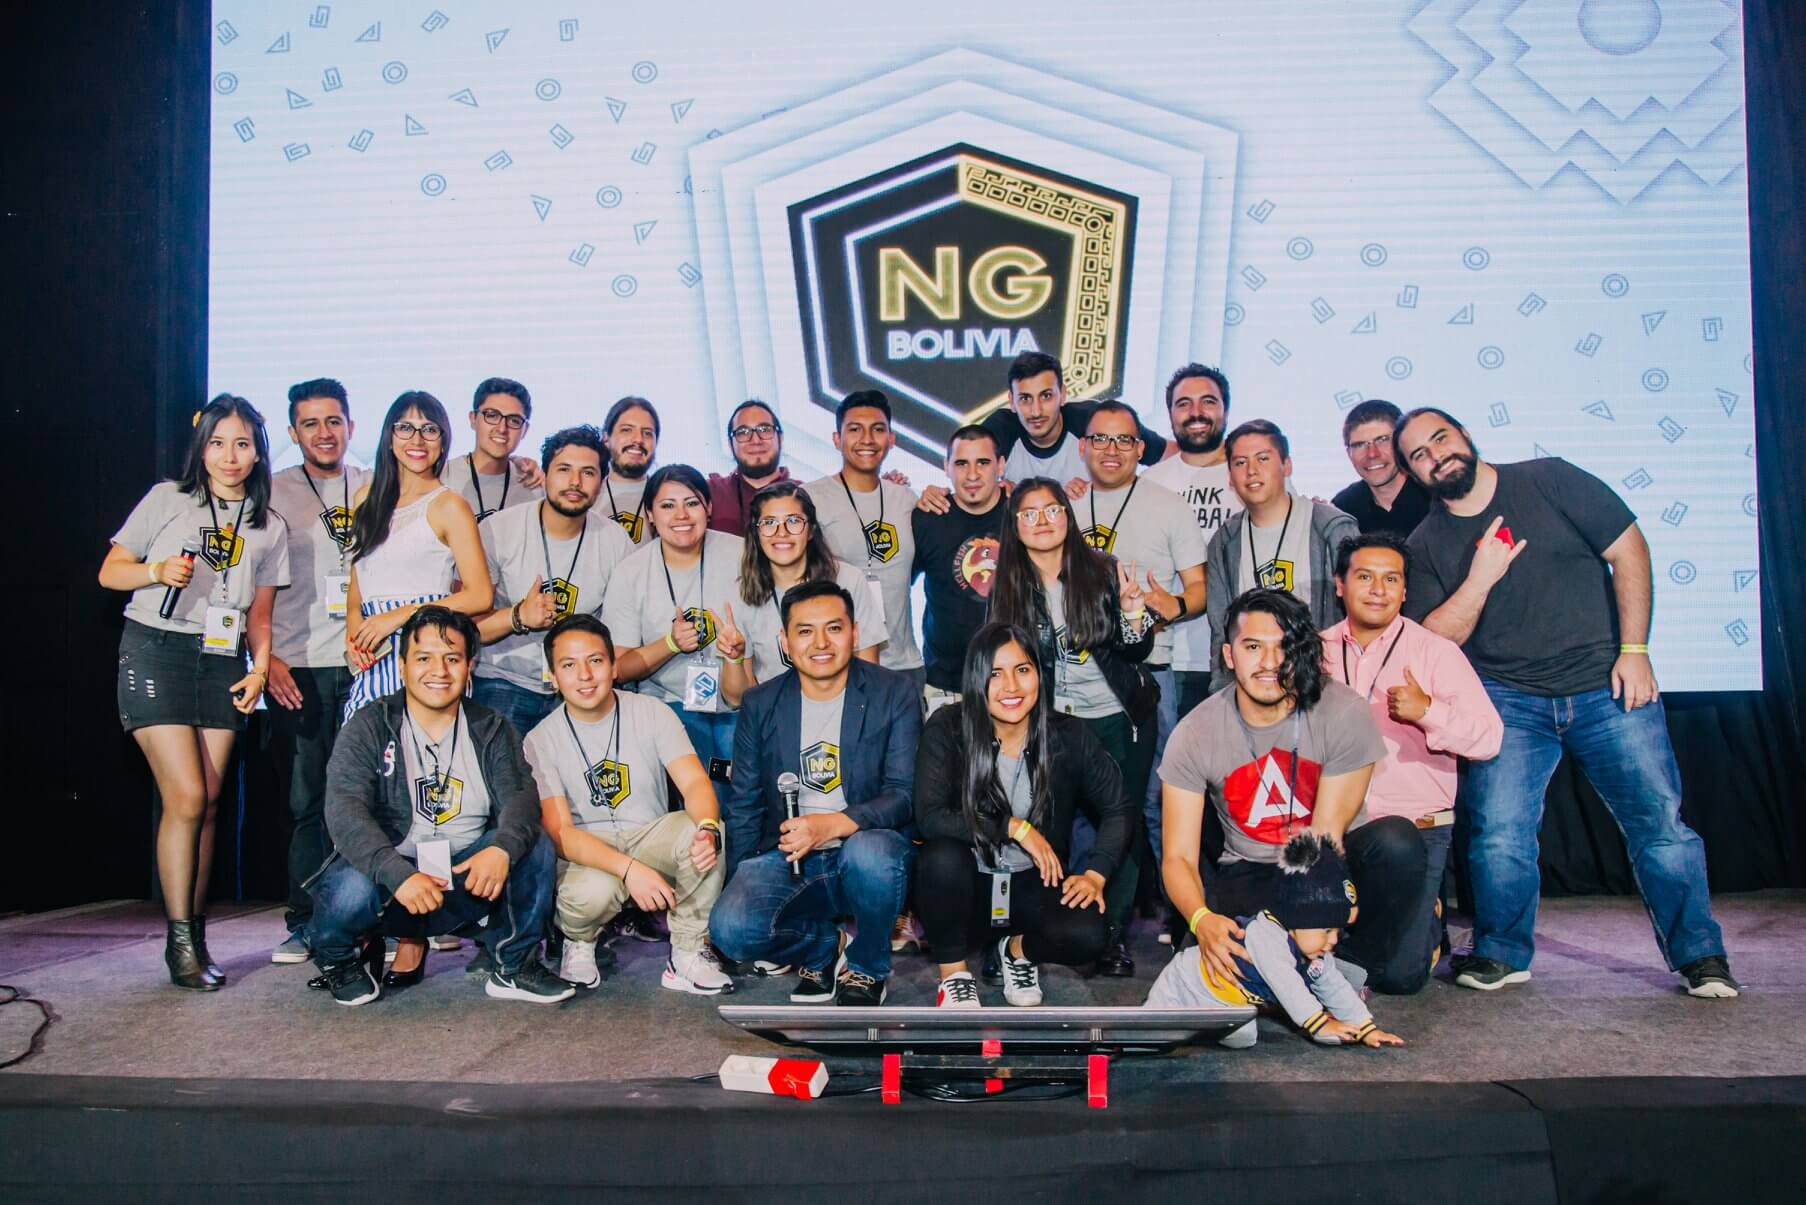 equipo ng bolivia 2019